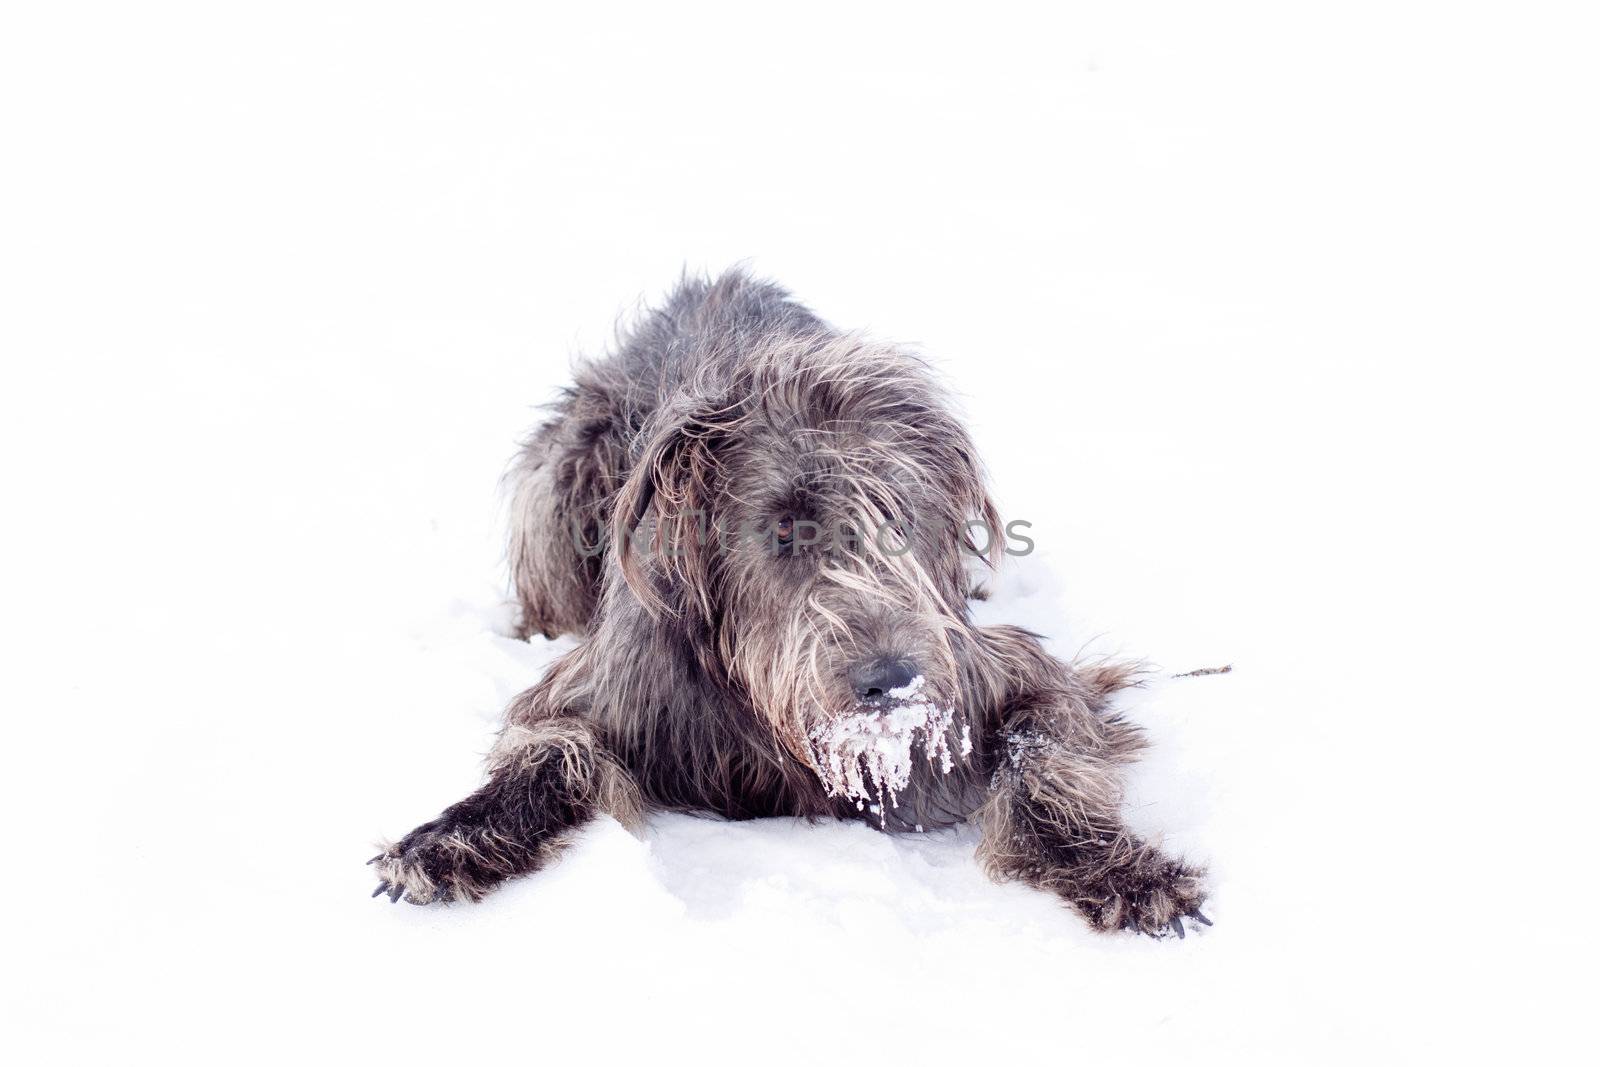 Irish wolfhound by foaloce